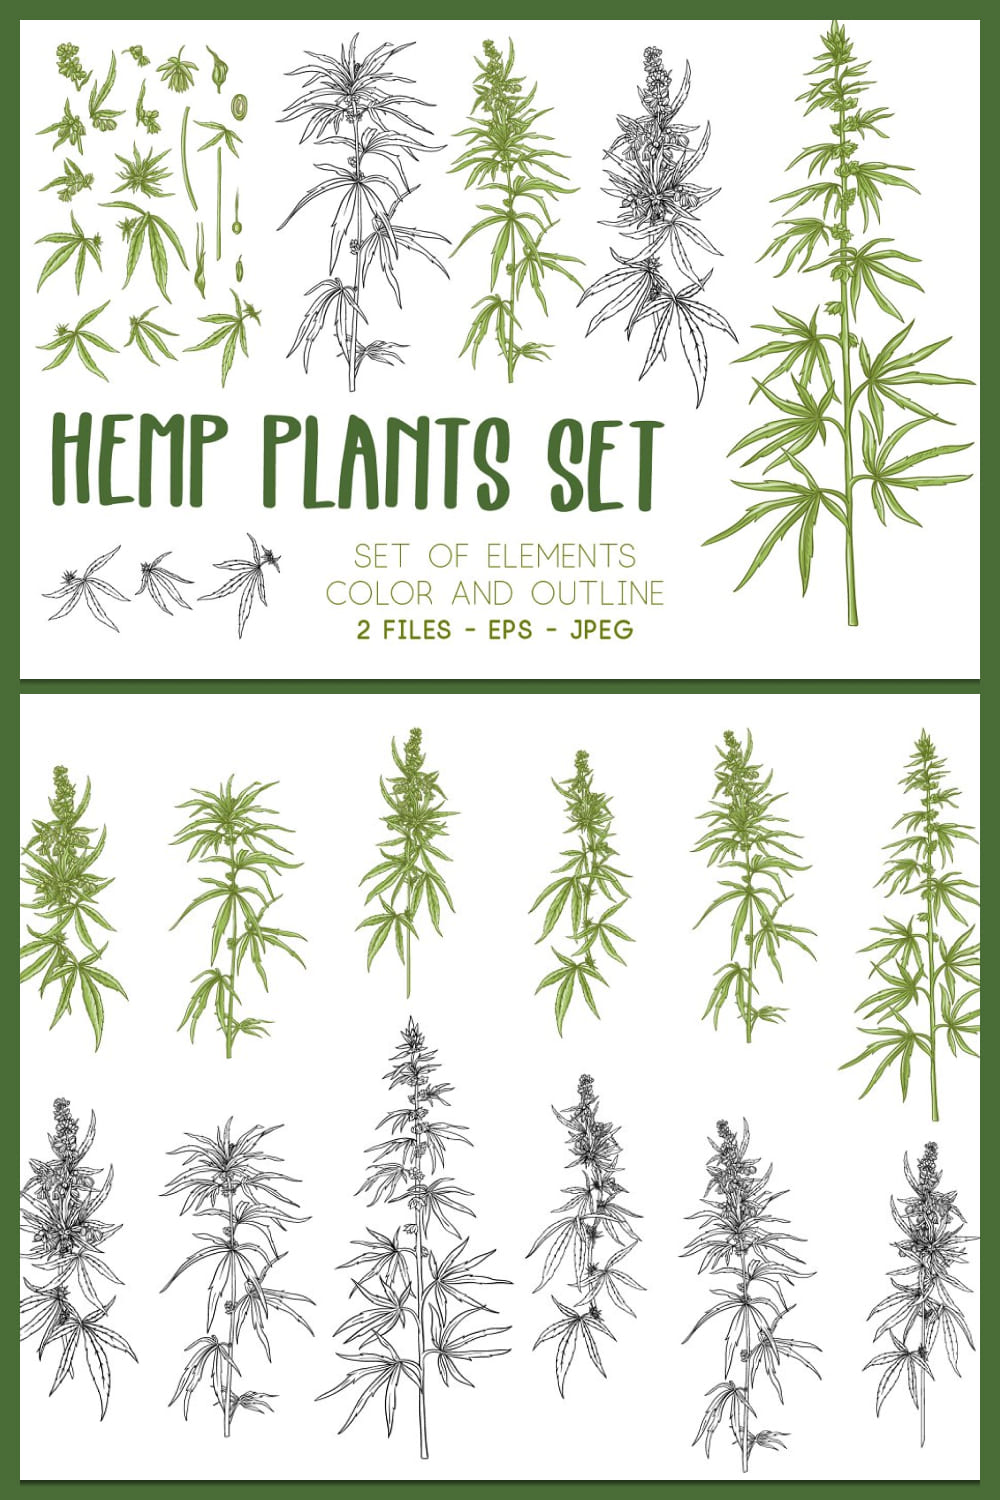 Hemp Plants Set. Color And Outline - Pinterest.